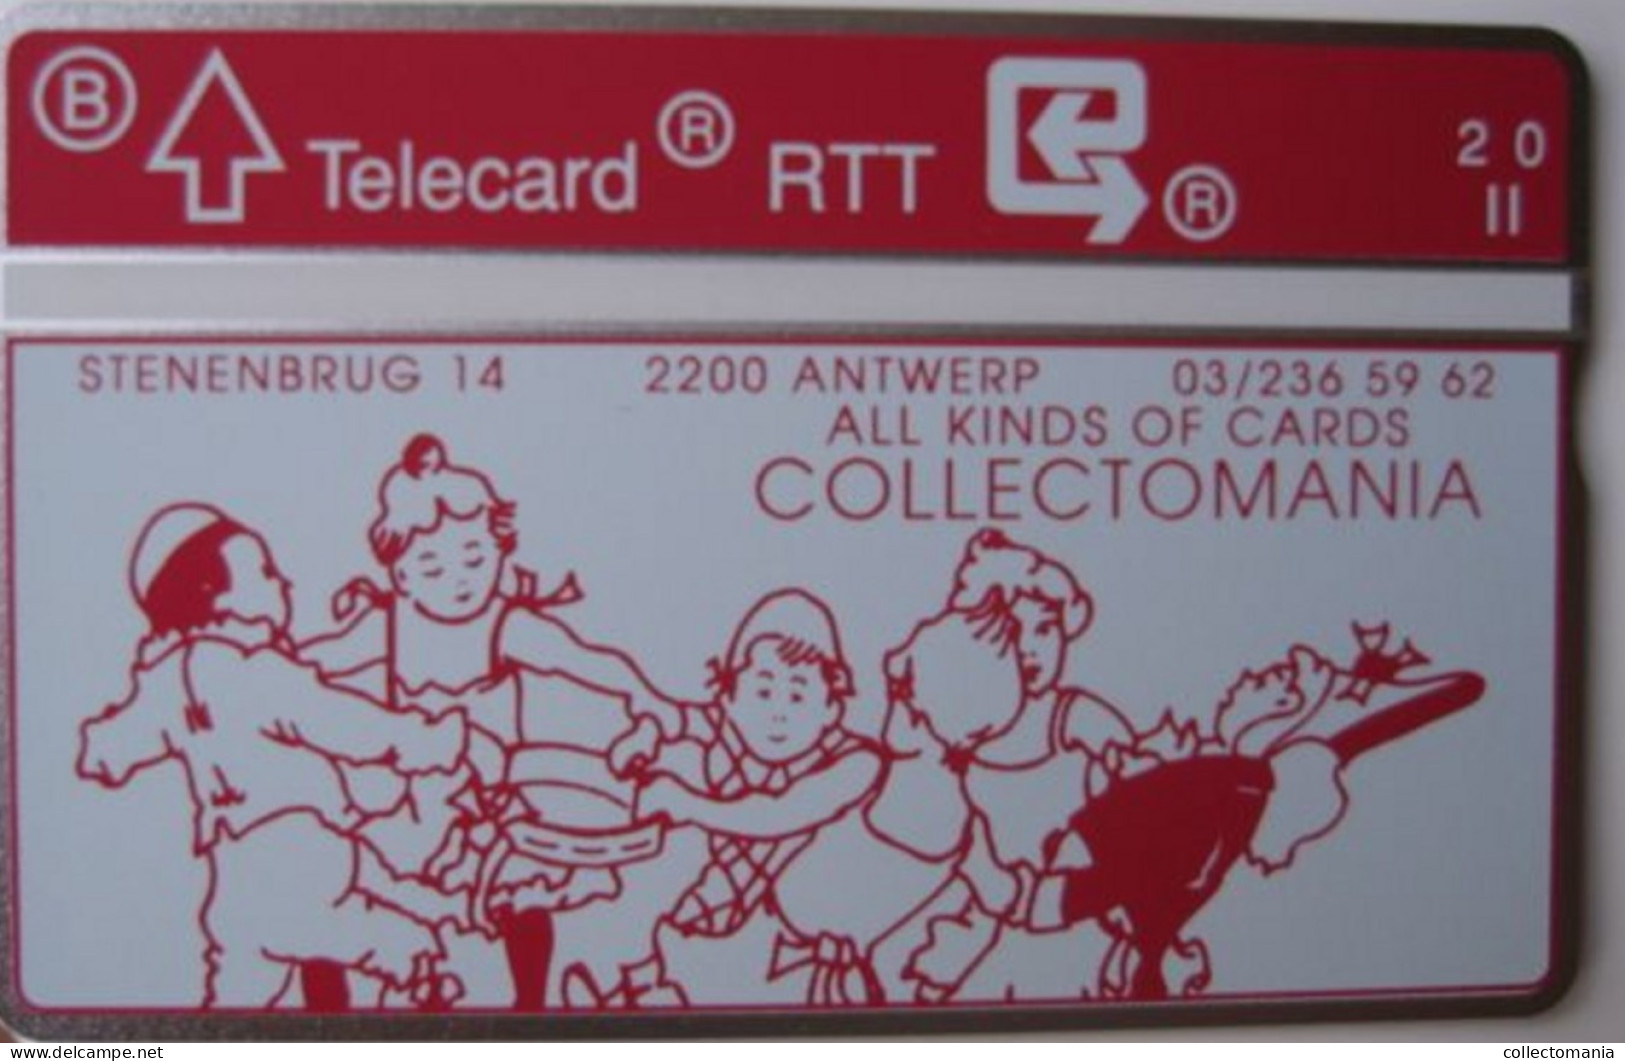 Onze Eerste Belgische Telecard Telefoonkaart Van 1990  Collectomania  R.T.T.  BELGACOM TELEPHONE NIET Gebruikt - Zonder Chip